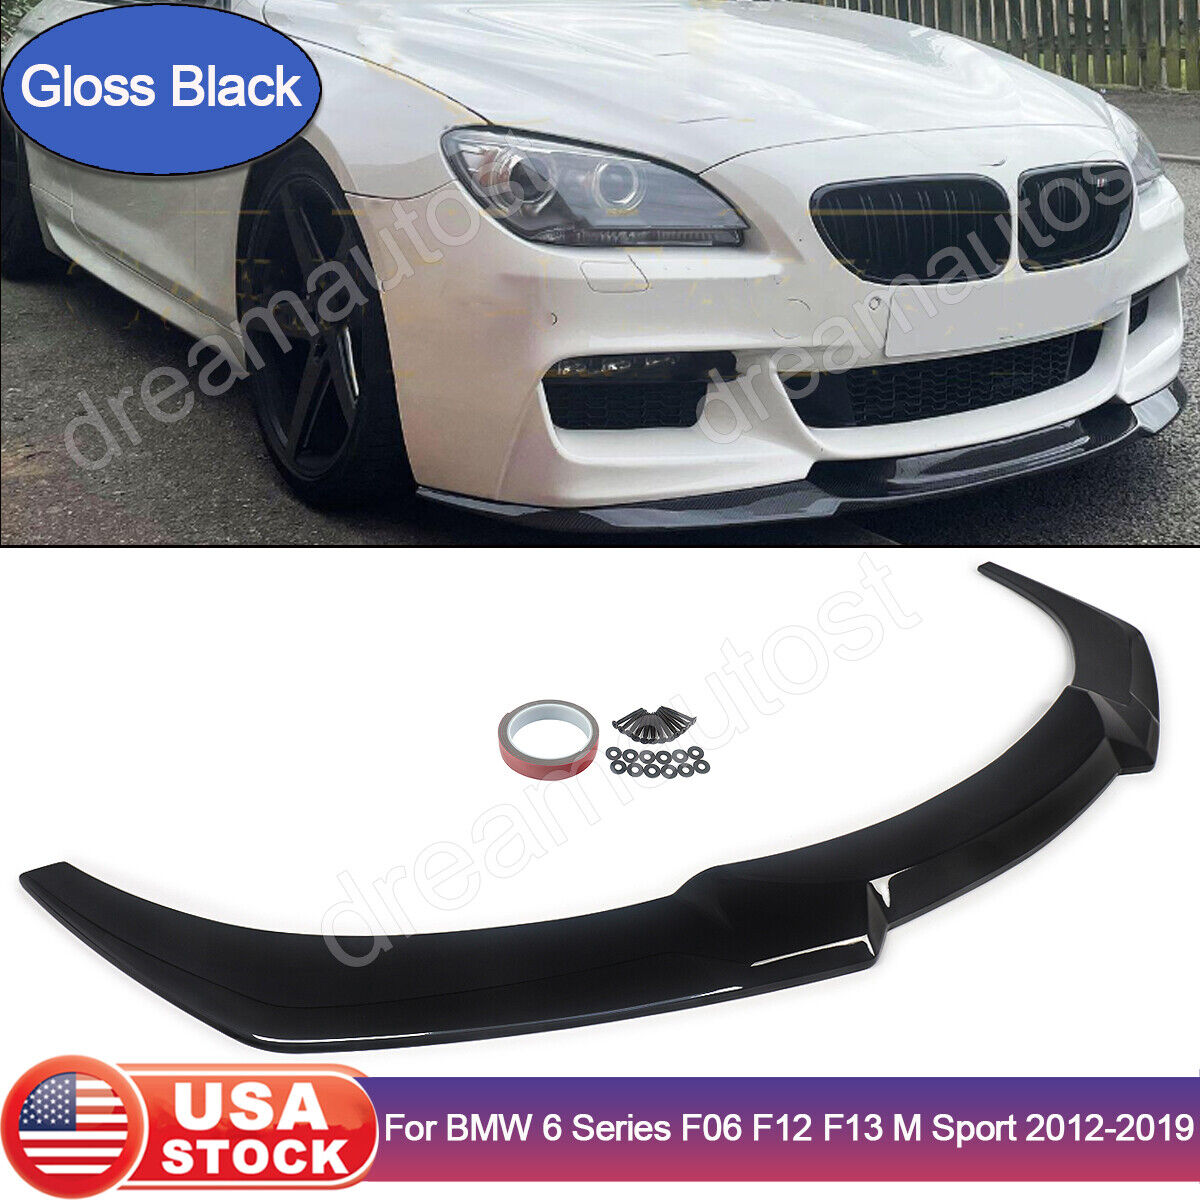 For BMW 6 Series F06 F12 F13 M Sport 12-18 Gloss Black Front Bumper Lip Splitter